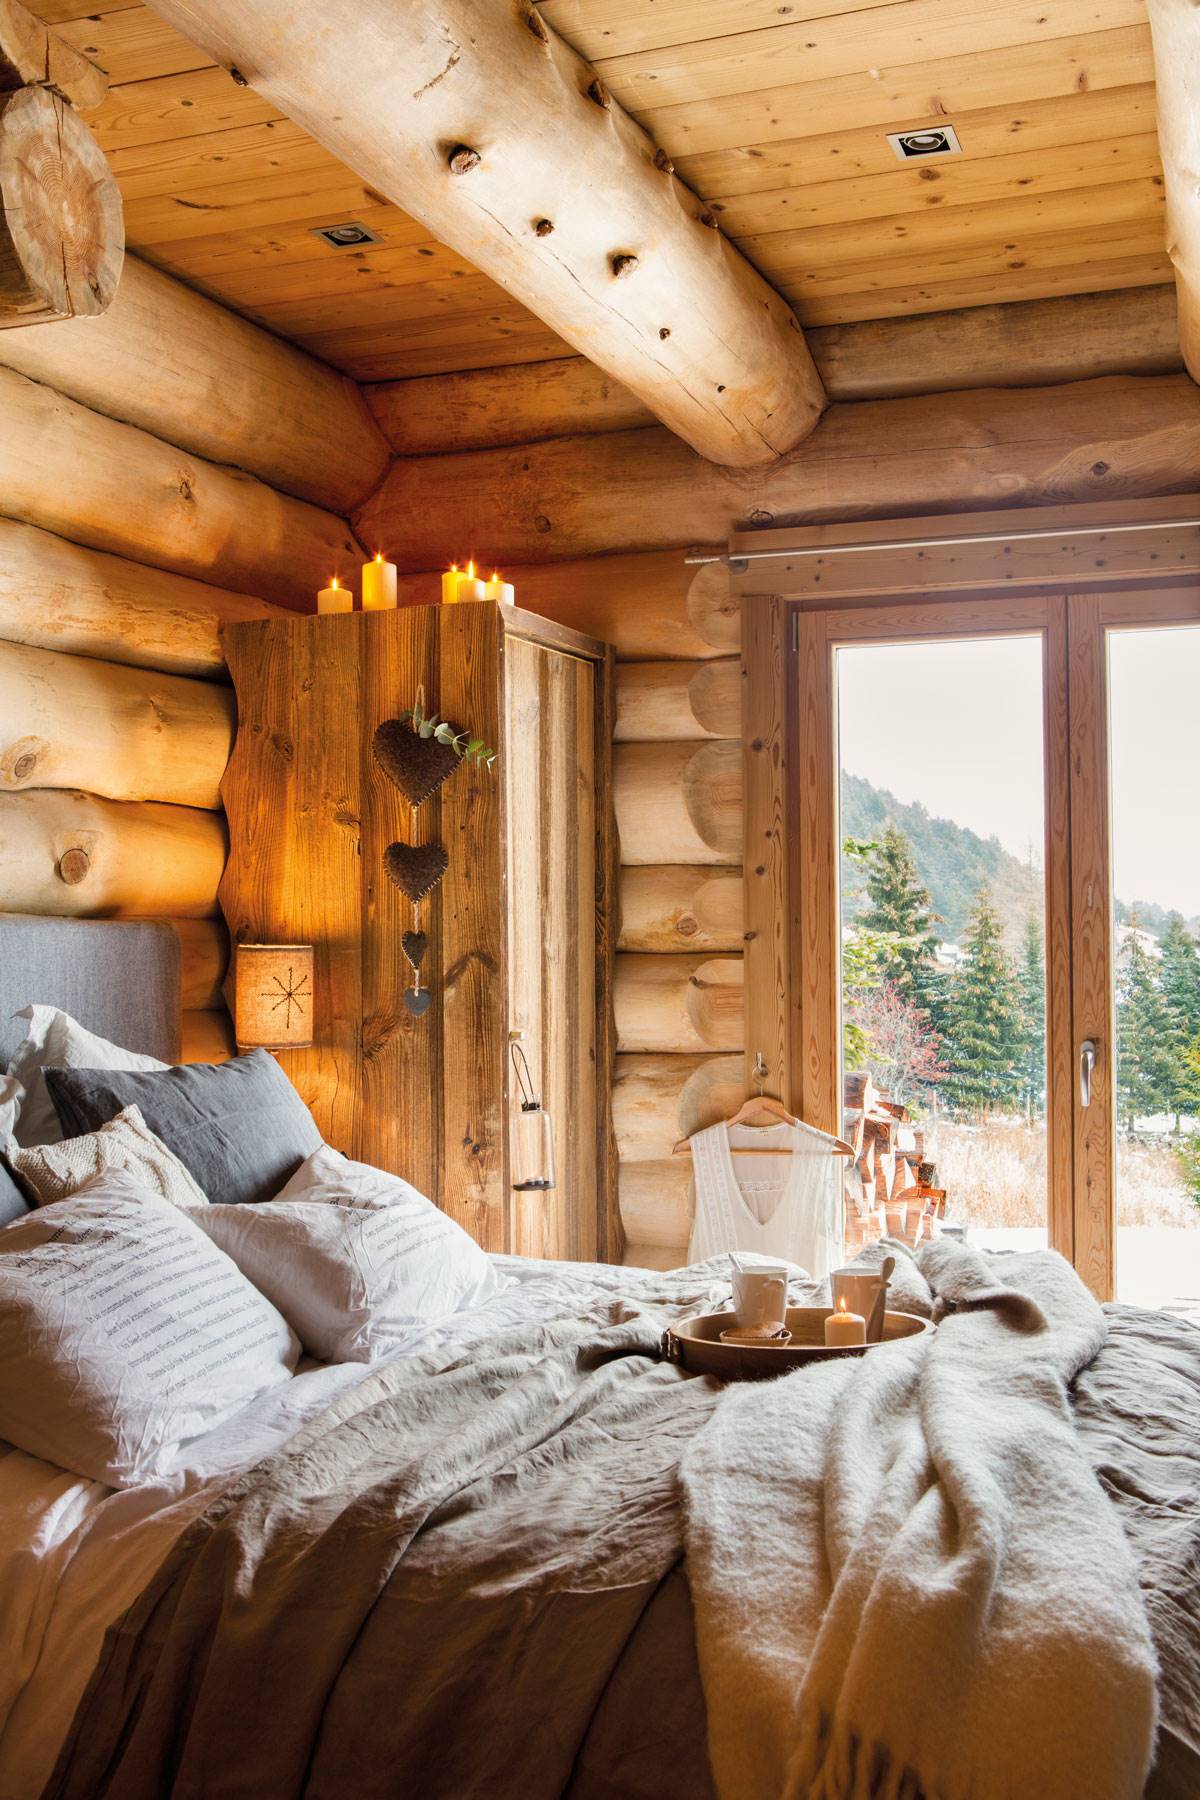 Dormitorio de invierno en una cabaña.